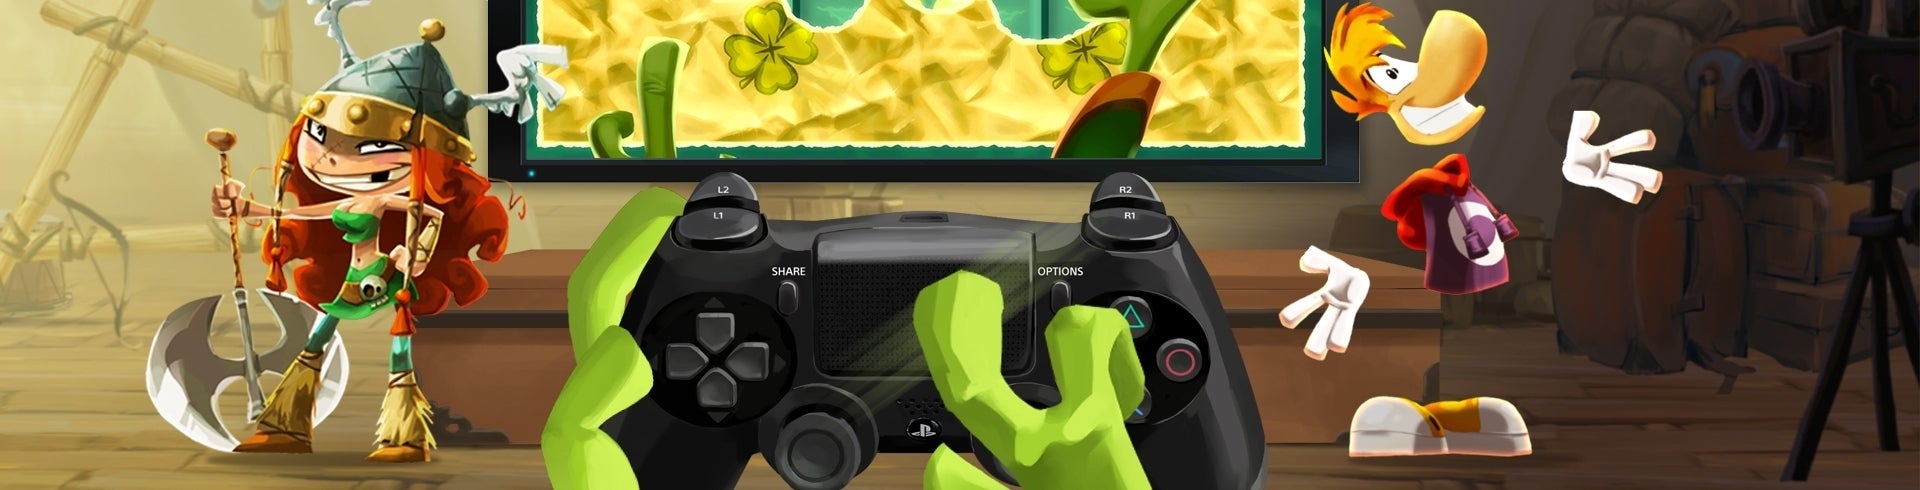 Image for Jak se odliší Rayman Legends na PS4 a Xbox One?